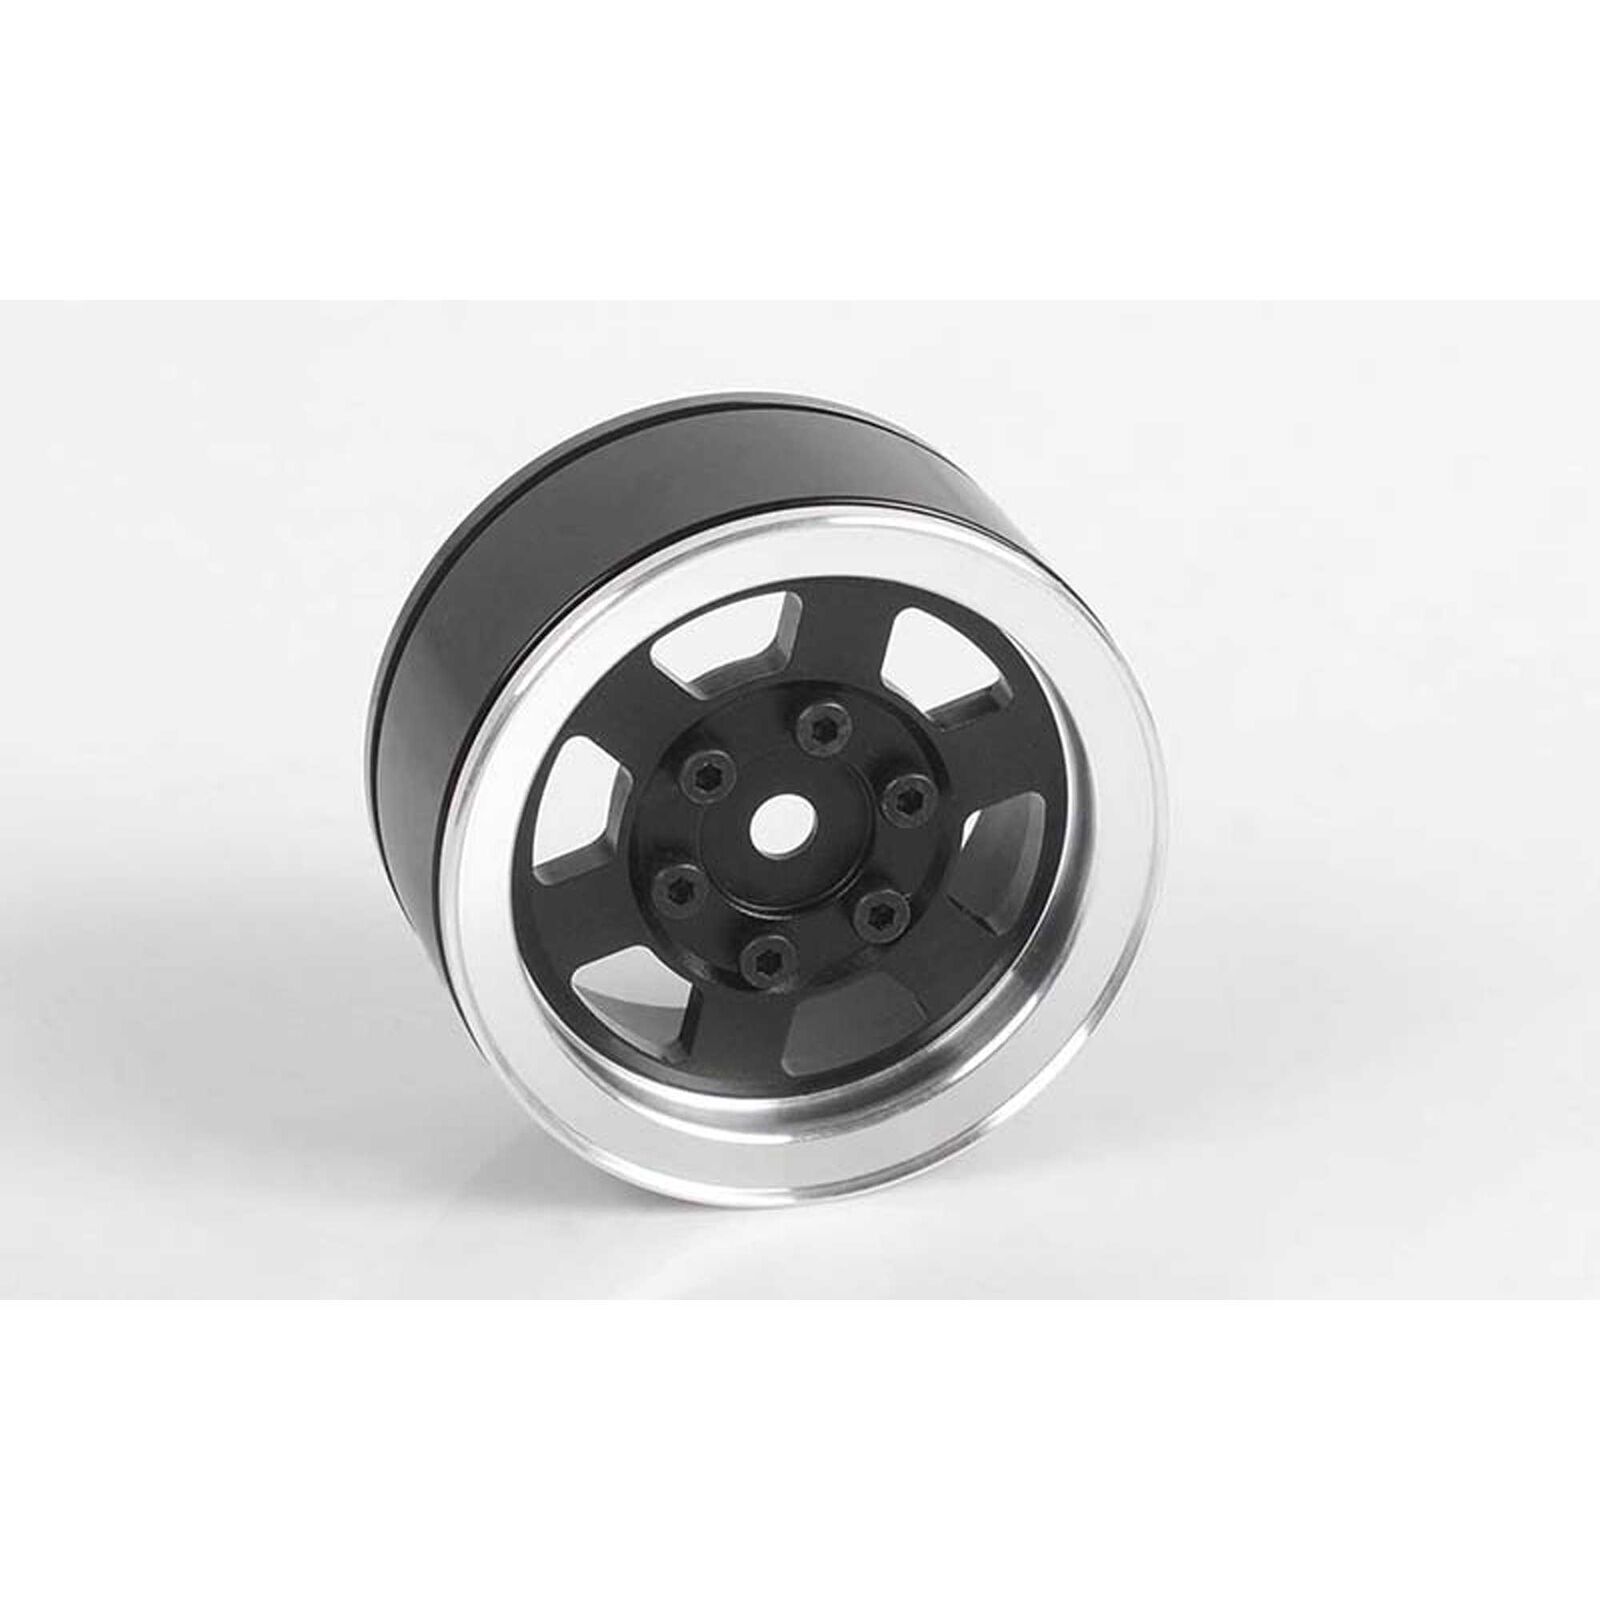 1/10 Six-Spoke 1.55" Front/Rear Internal Beadlock Wheel, 12mm Hex, Black (1)